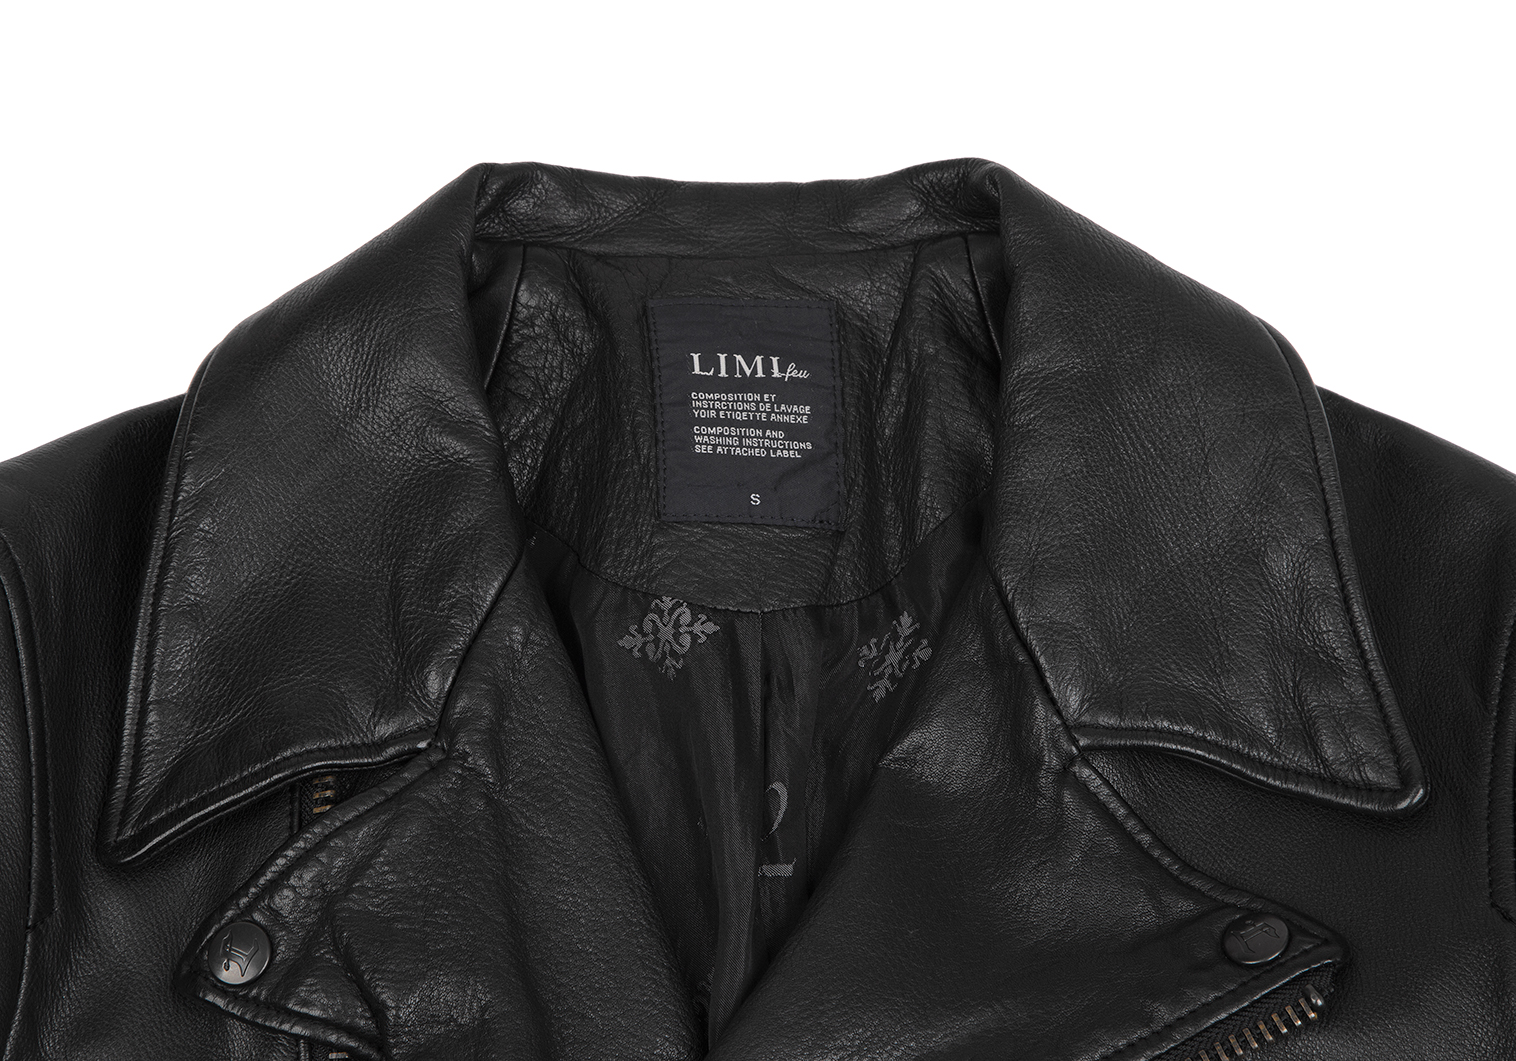 LIMI feu / リミフゥ | ブラックスタッズ ダブル レザーライダースジャケット | M | ブラック | レディース